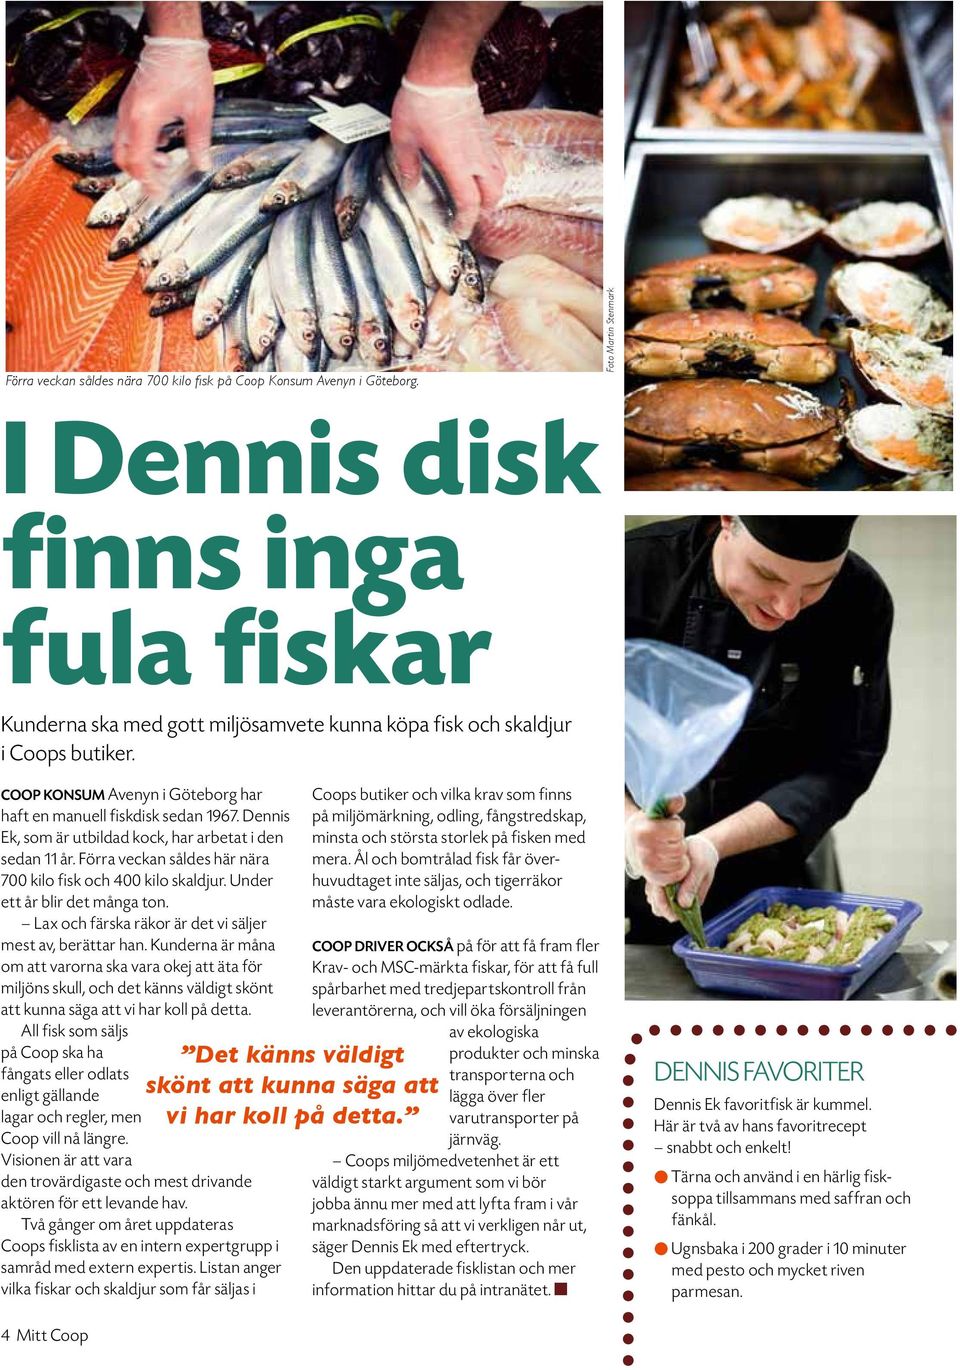 Coop Konsum Avenyn i Göteborg har haft en manuell fiskdisk sedan 1967. Dennis Ek, som är utbildad kock, har arbetat i den sedan 11 år. Förra veckan såldes här nära 7 kilo fisk och 4 kilo skaldjur.